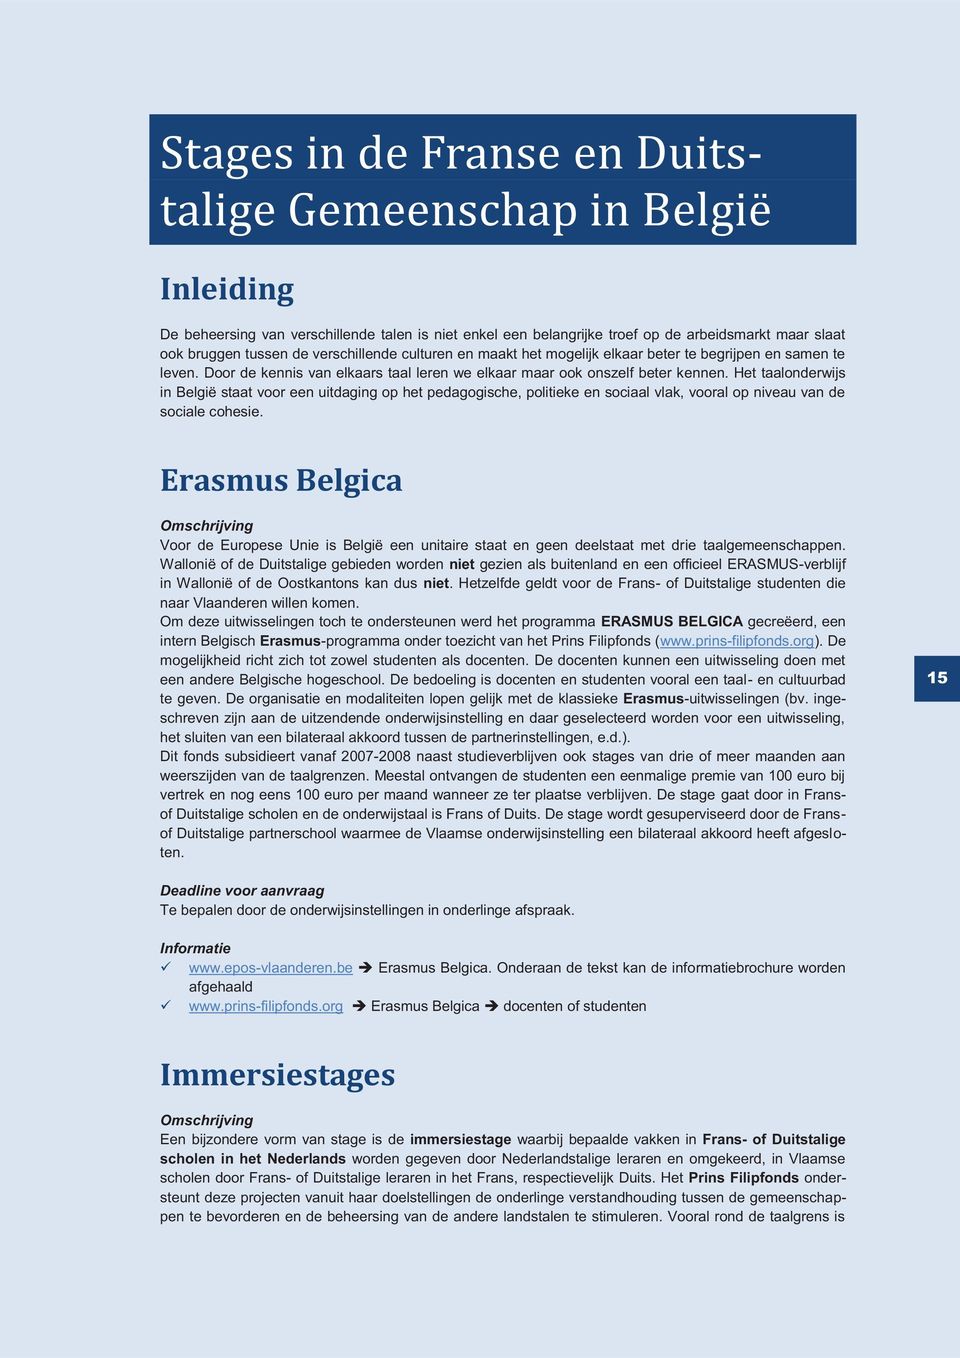 Het taalonderwijs in België staat voor een uitdaging op het pedagogische, politieke en sociaal vlak, vooral op niveau van de sociale cohesie.